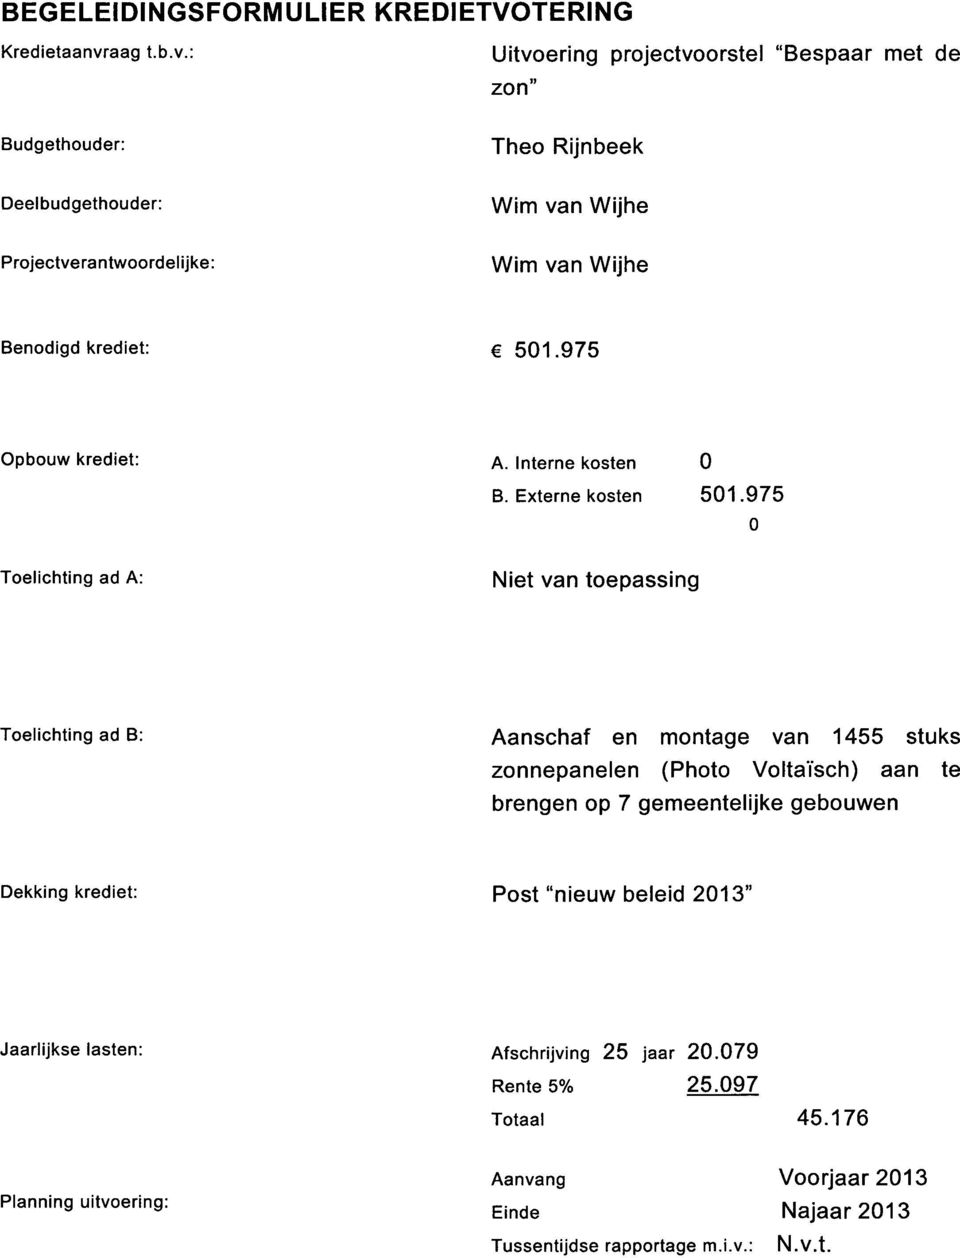 : Uitvoering projectvoorstel "Bespaar met de zon Budgethouder: Theo Rijnbeek Deelbudgethouder: Wim van Wijhe Projectverantwoordelijke: Wim van Wijhe Benodigd krediet: 501.